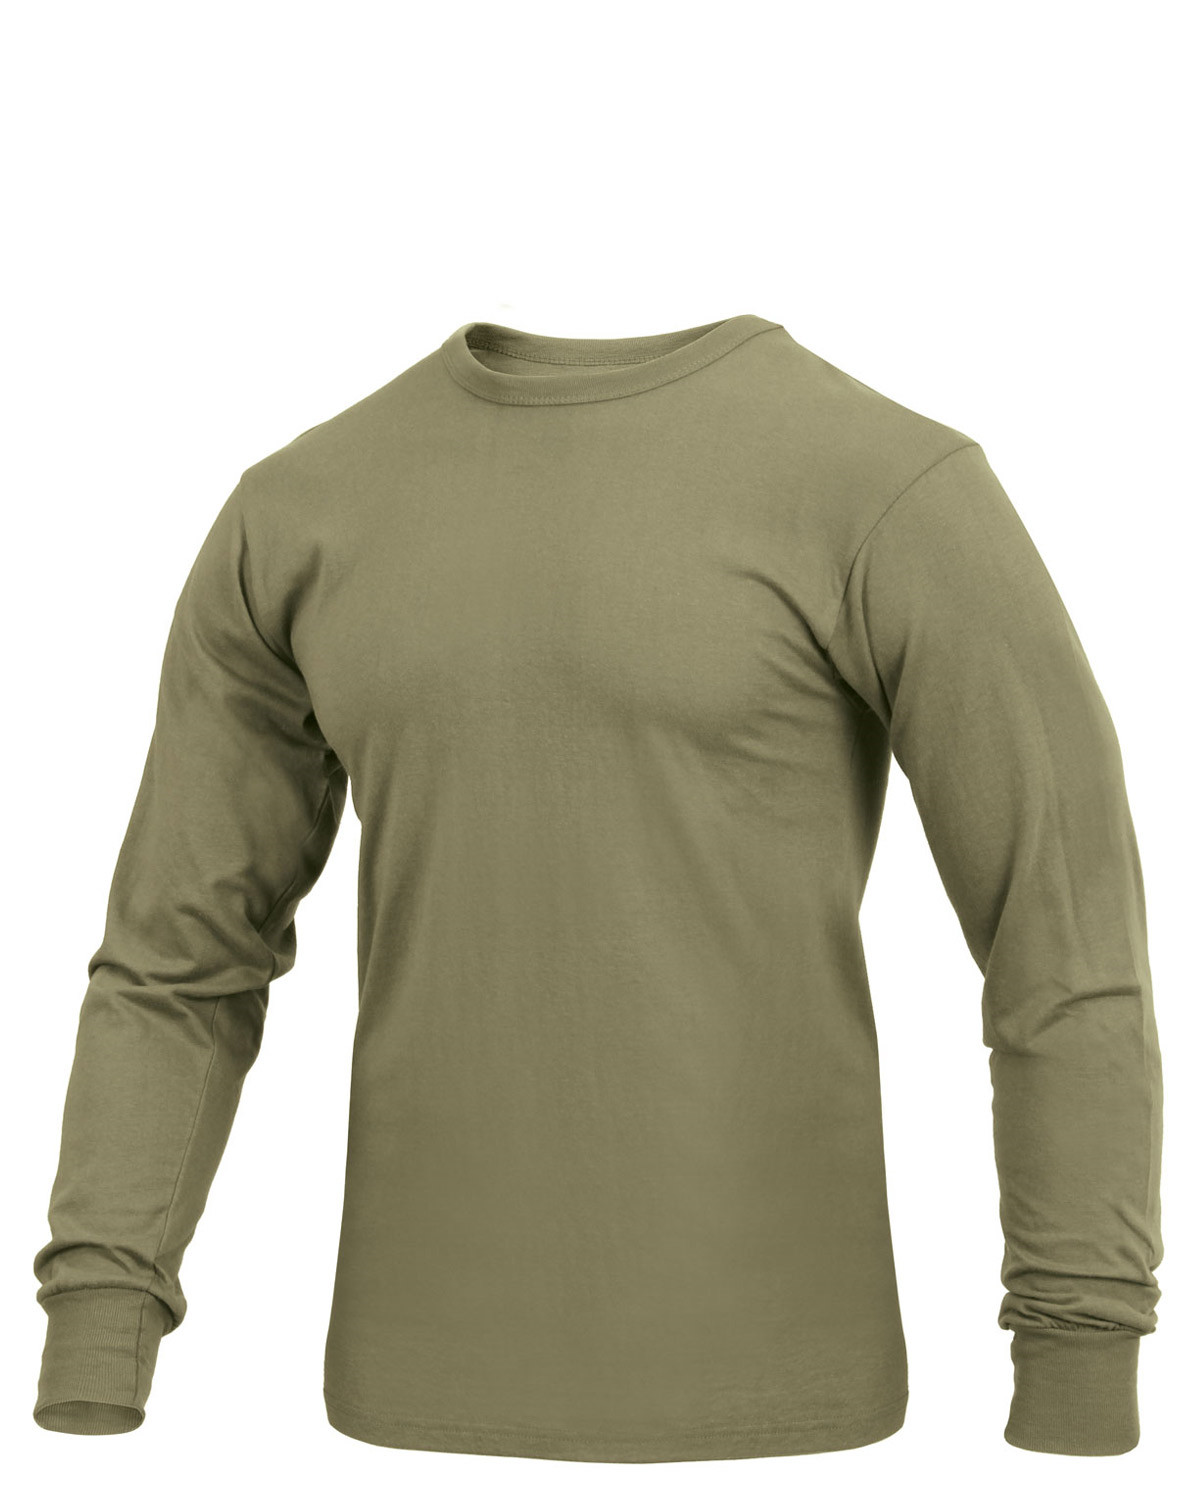 #2 - Rothco Langærmet T-shirt (Coyote Brun, XL)